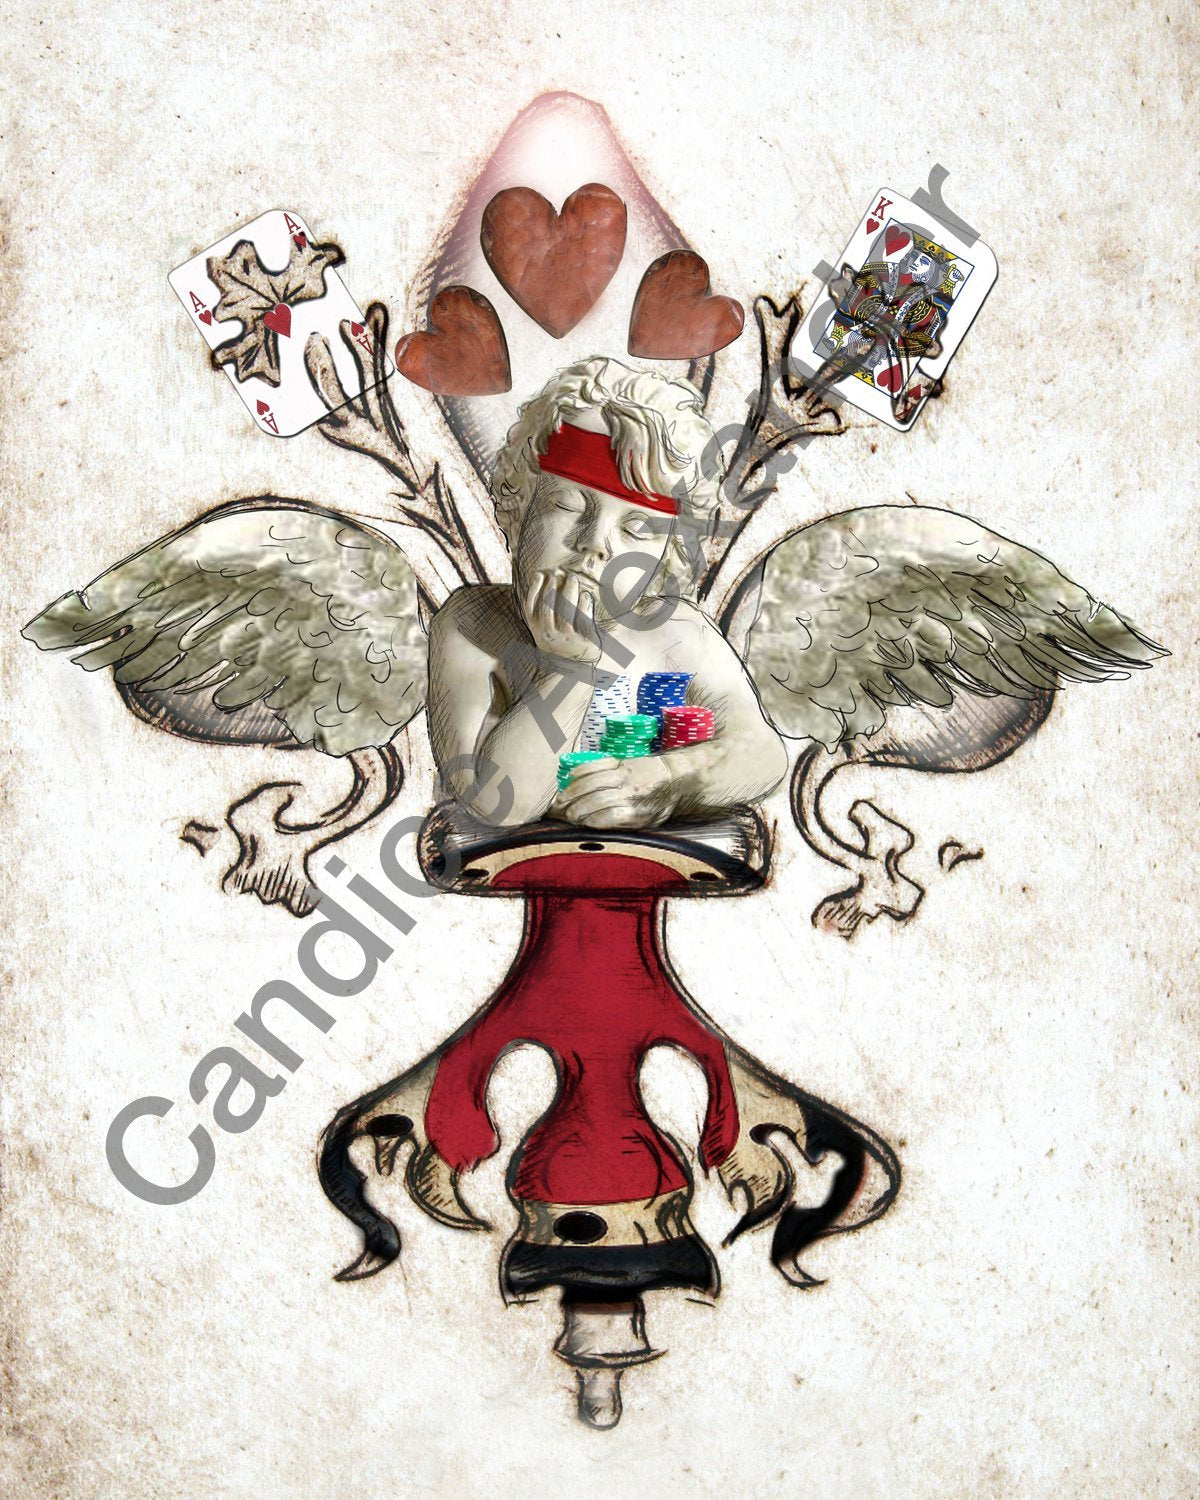 Texas Hold 'Em Fleur De Lis by Candice Alexander Fleur De Lis Artist Fleur De Lis art by Candice Alexander, Louisiana Artist